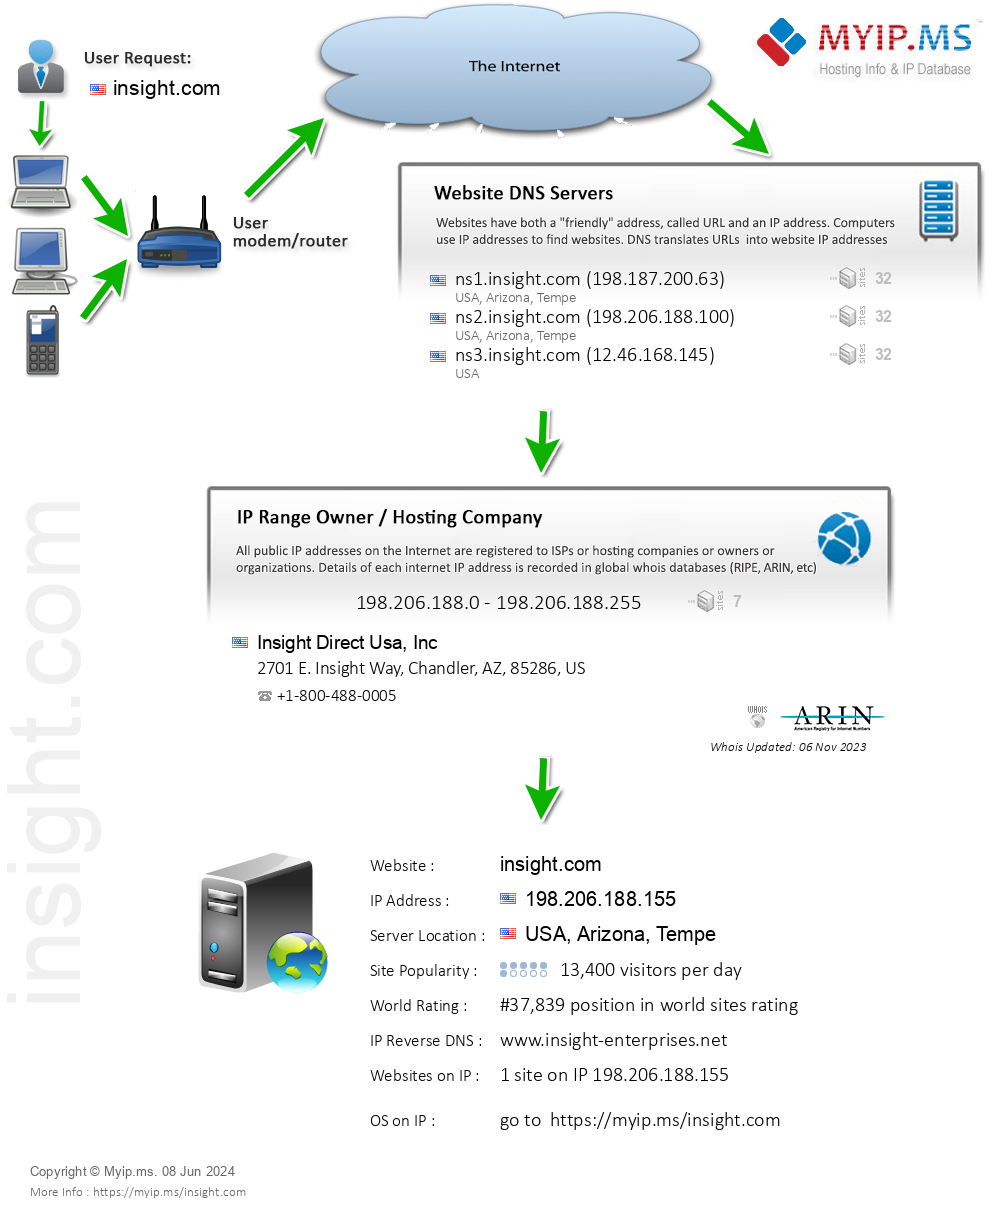 Insight.com - Website Hosting Visual IP Diagram